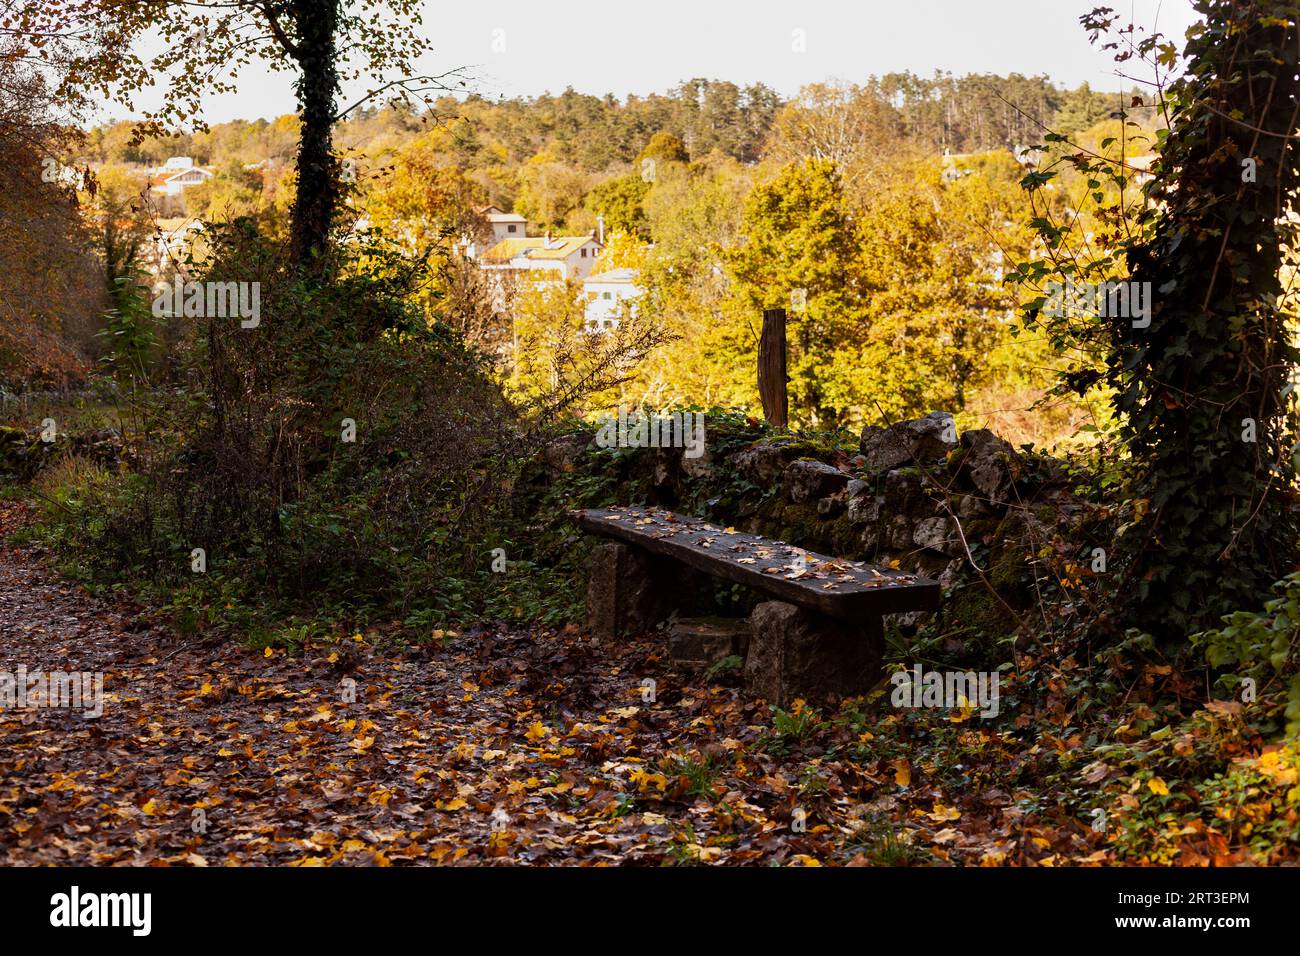 Vieux banc en bois avec des feuilles mortes en saison d'automne, Slovénie Banque D'Images